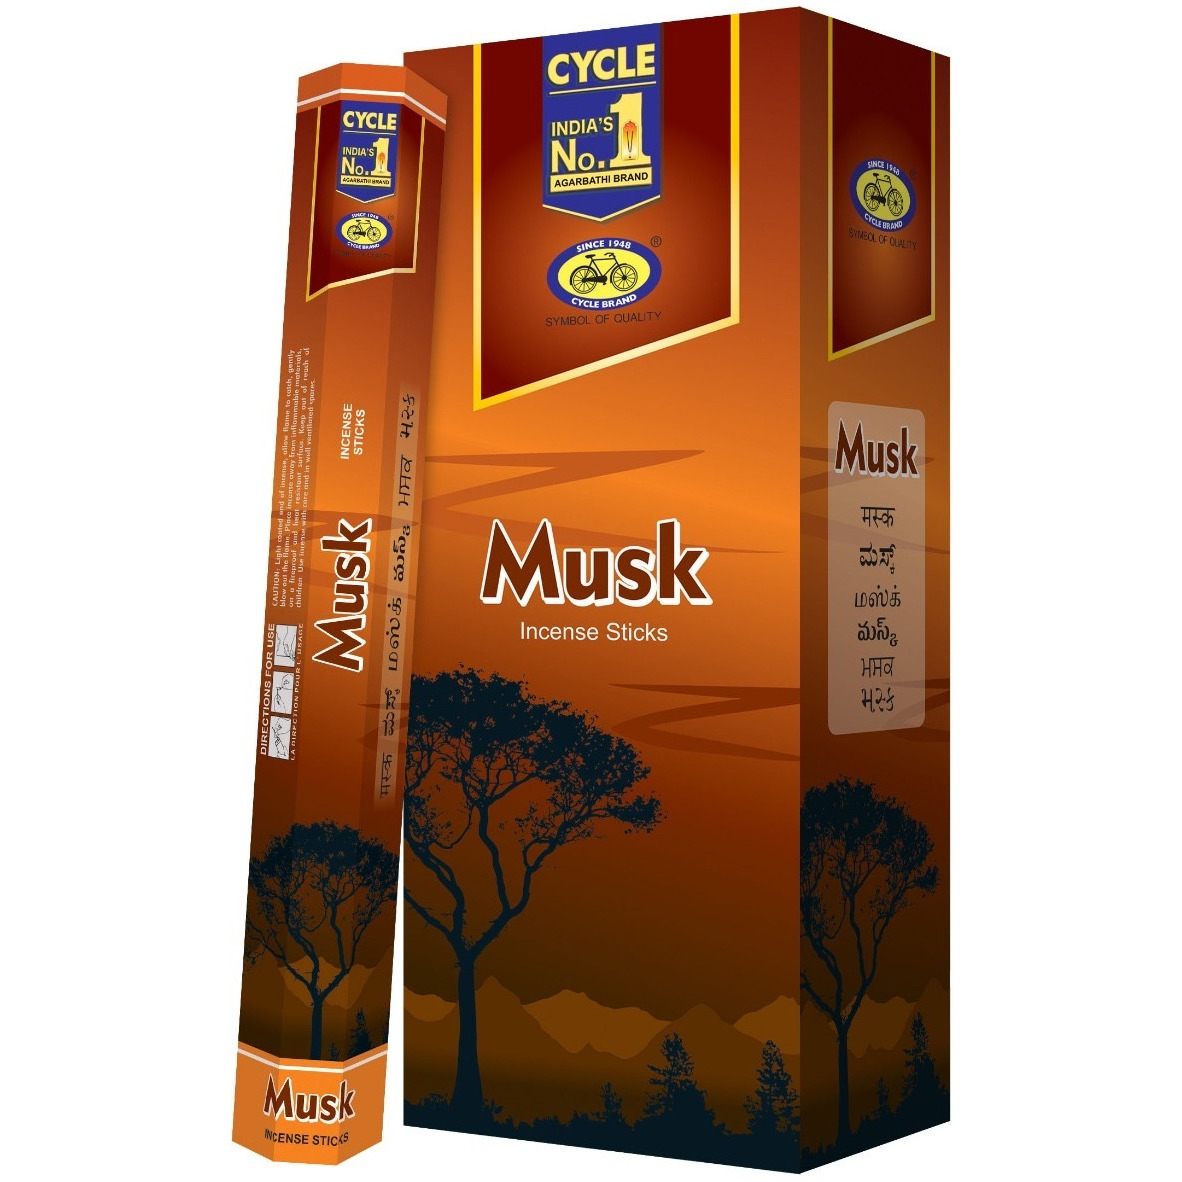 Case of 12 - Cycle No 1 Musk Agarbatti Incense Sticks - 120 Pc